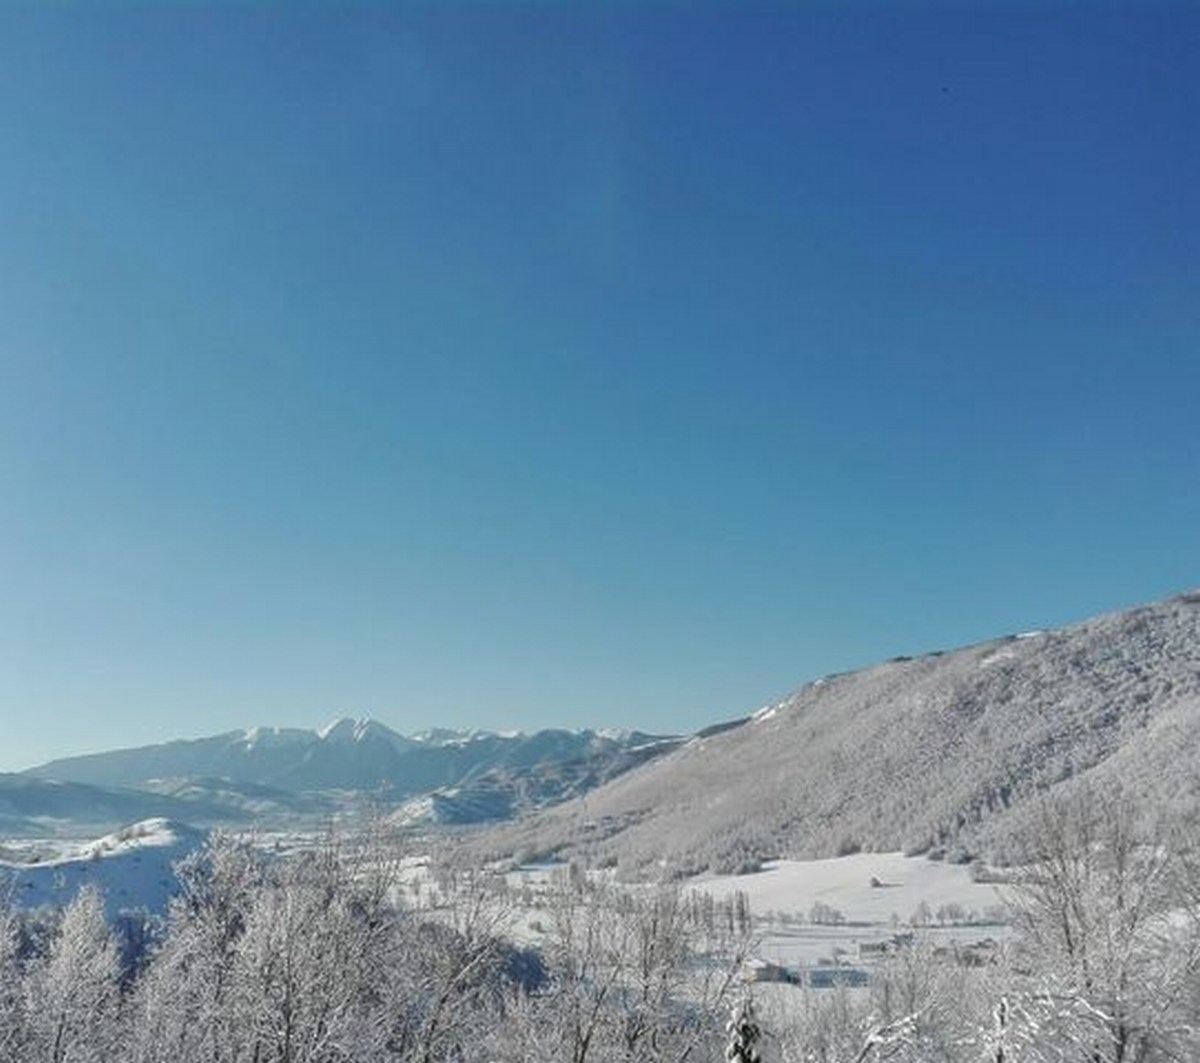 Foto Melissa Rosati Pian di Chiavano (Cascia) neve - gennaio 2021 (12)